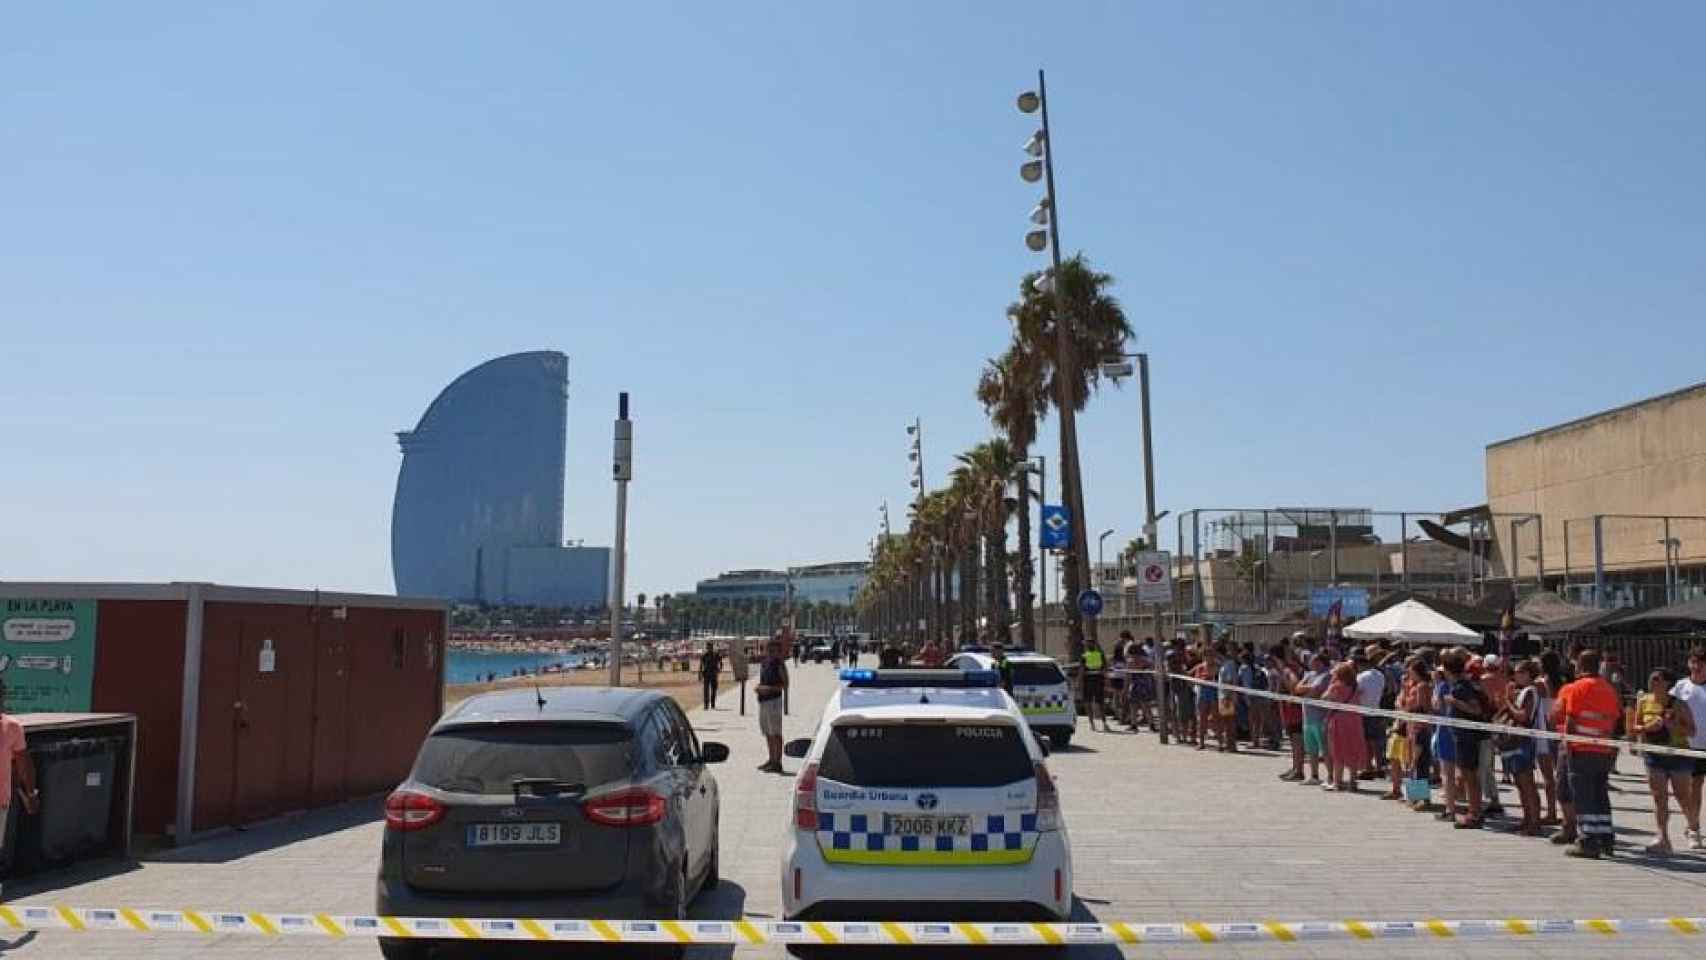 La playa de Sant Sebastià, en el barrio de la Barceloneta, desalojada por la presencia de un artefacto explosivo / TWITTER PP